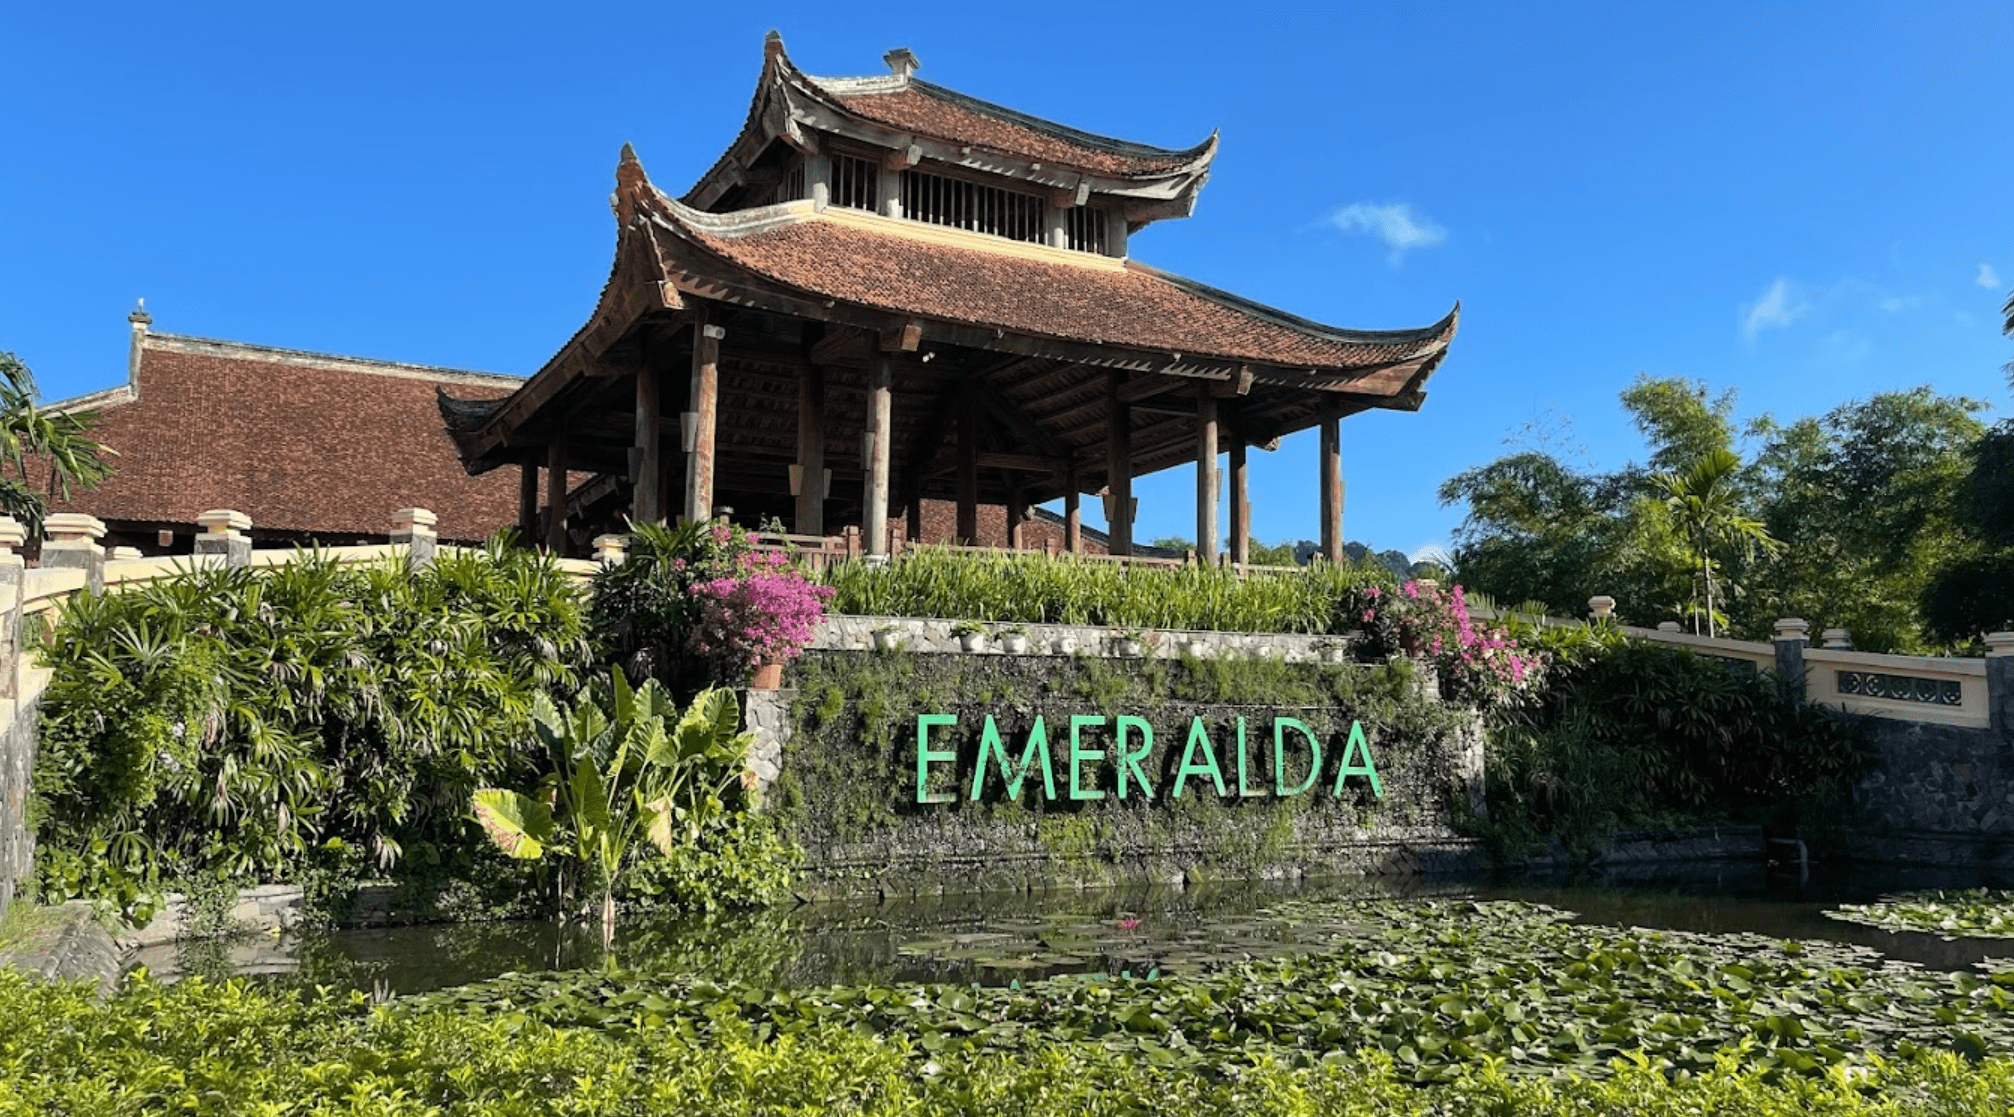 Emeralda resort là một điểm nghỉ dưỡng cao cấp nếu bạn muốn đến Tuyệt Tình Cốc Ninh Bình